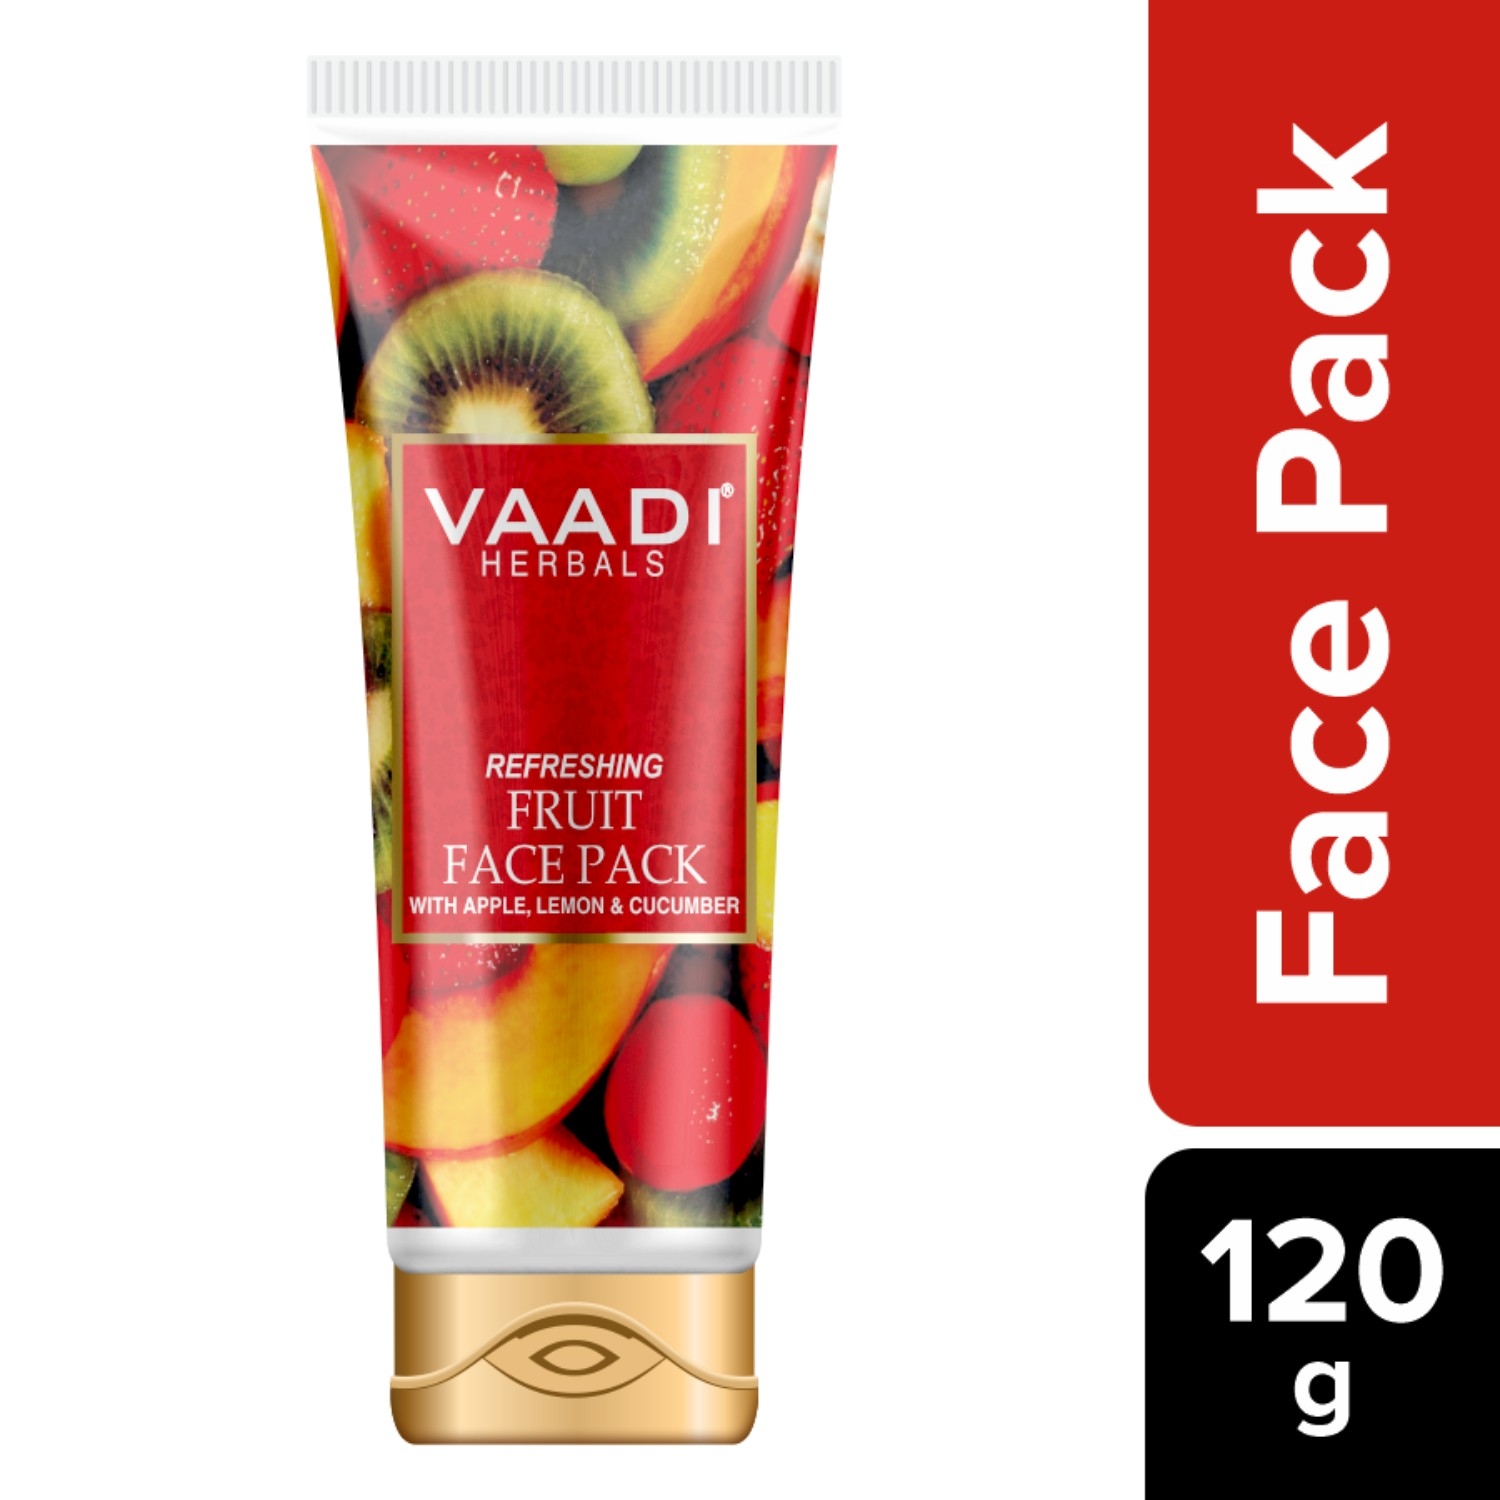 Vaadi Herbals Refreshing Fruit Pack (120g)